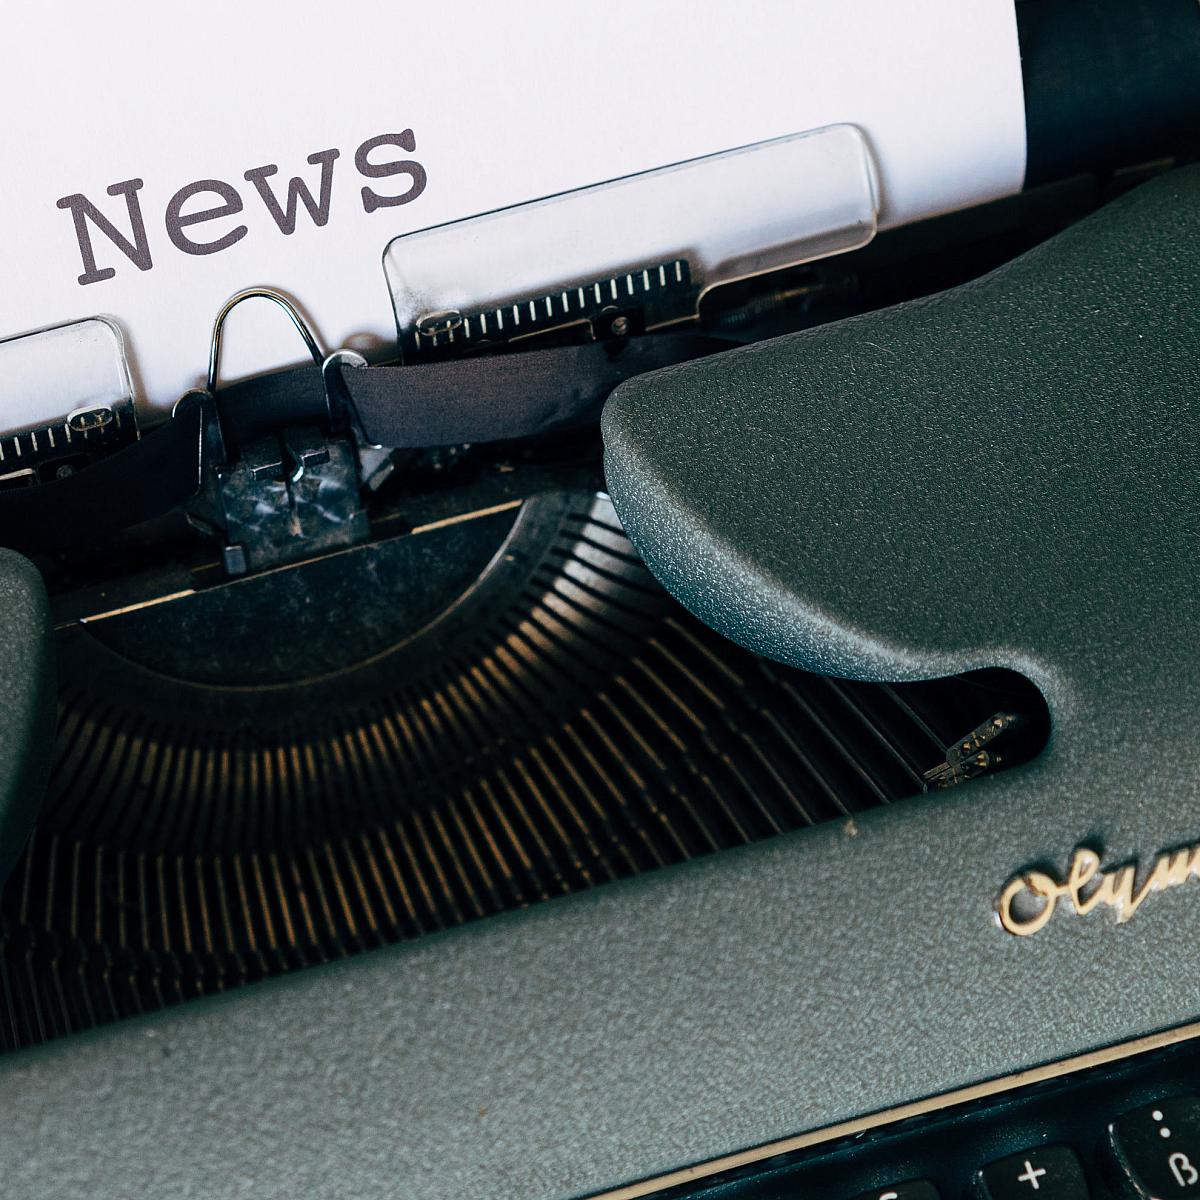 News - paper in typewriter